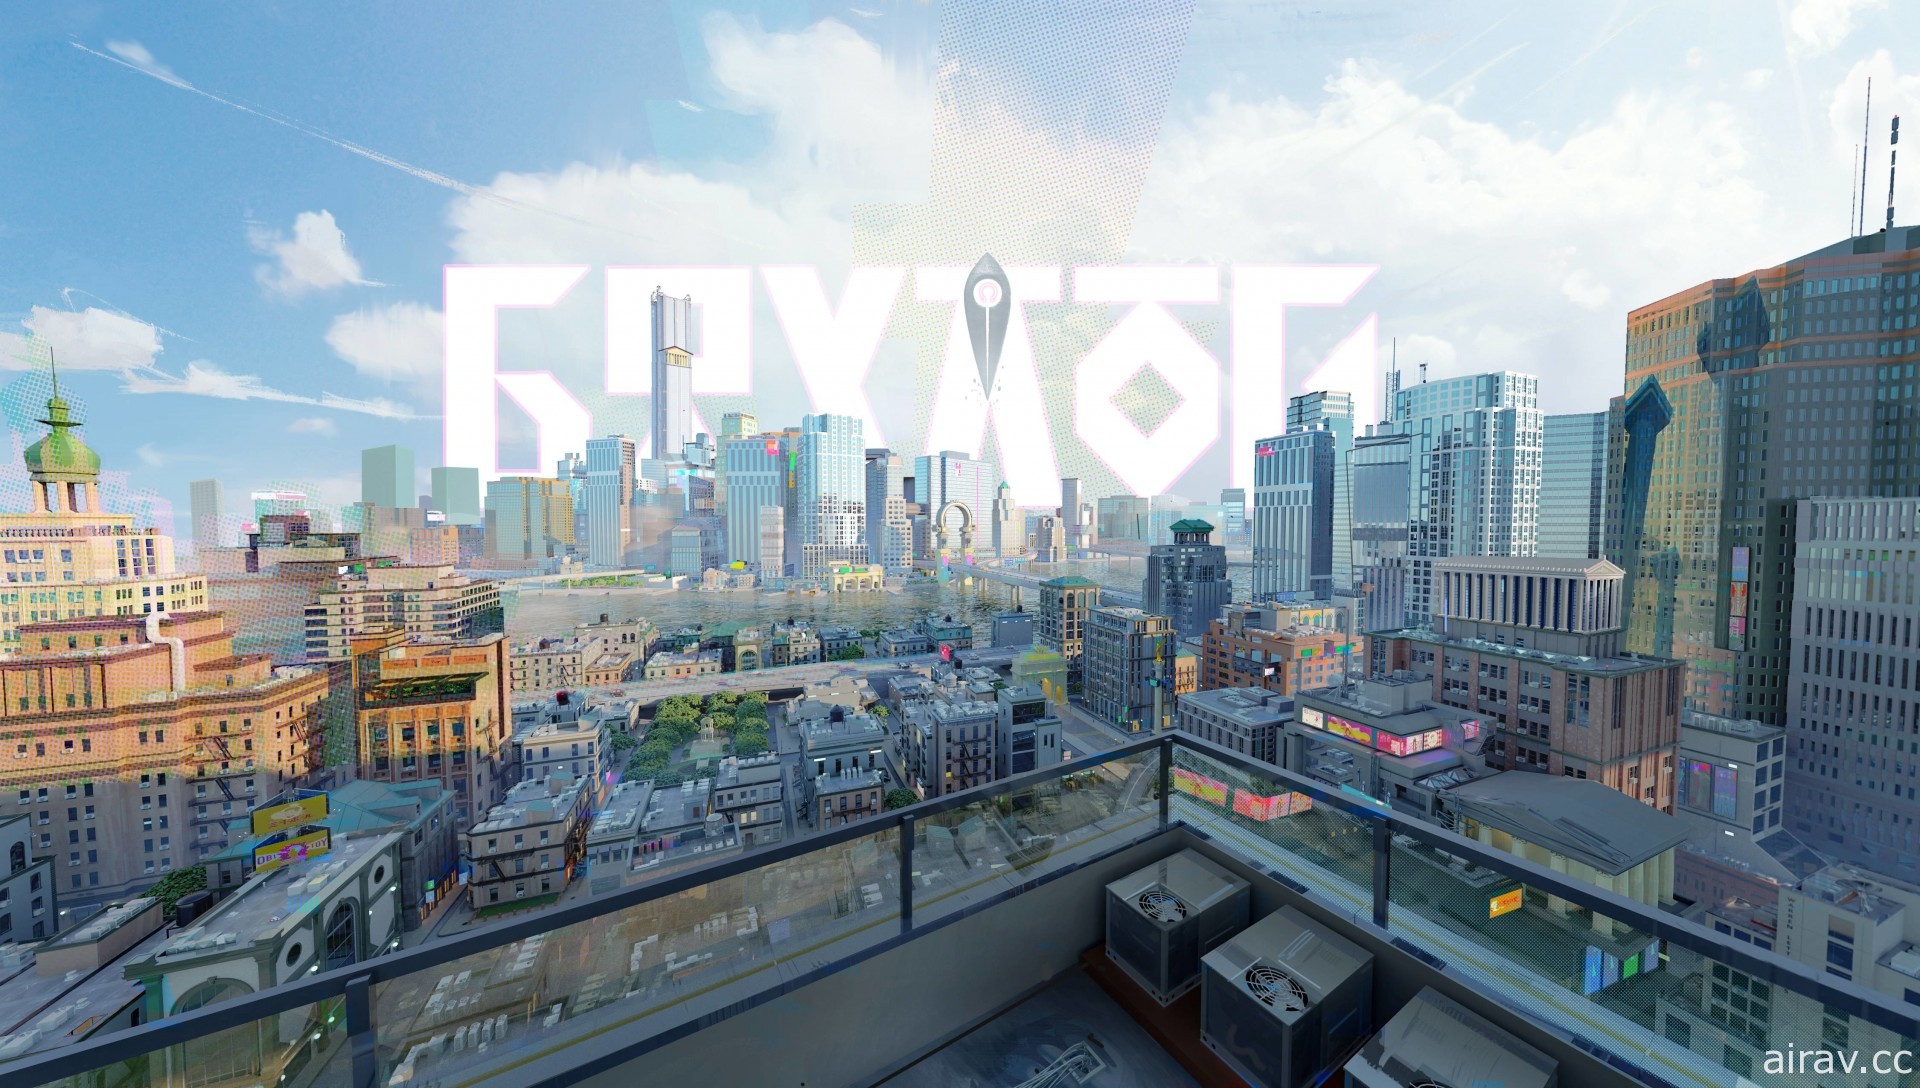 都市神话题材卡牌游戏《神觉者》全球首次曝光 释出制作团队心路历程